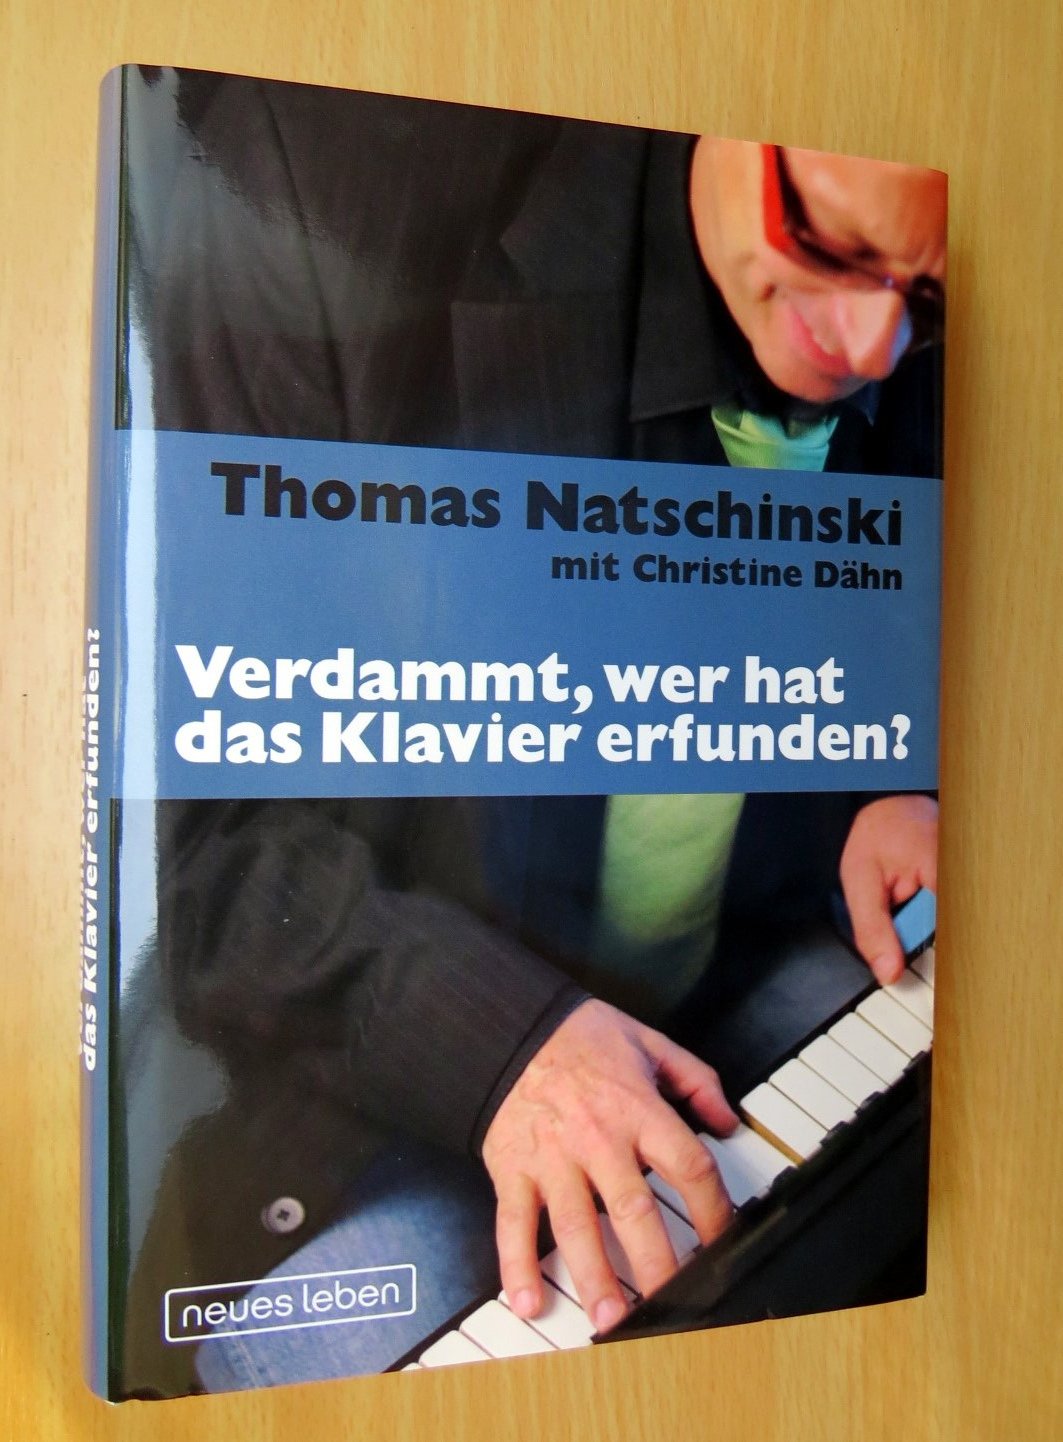 ISBN 9783355017480 "Verdammt, wer hat das Klavier erfunden ...